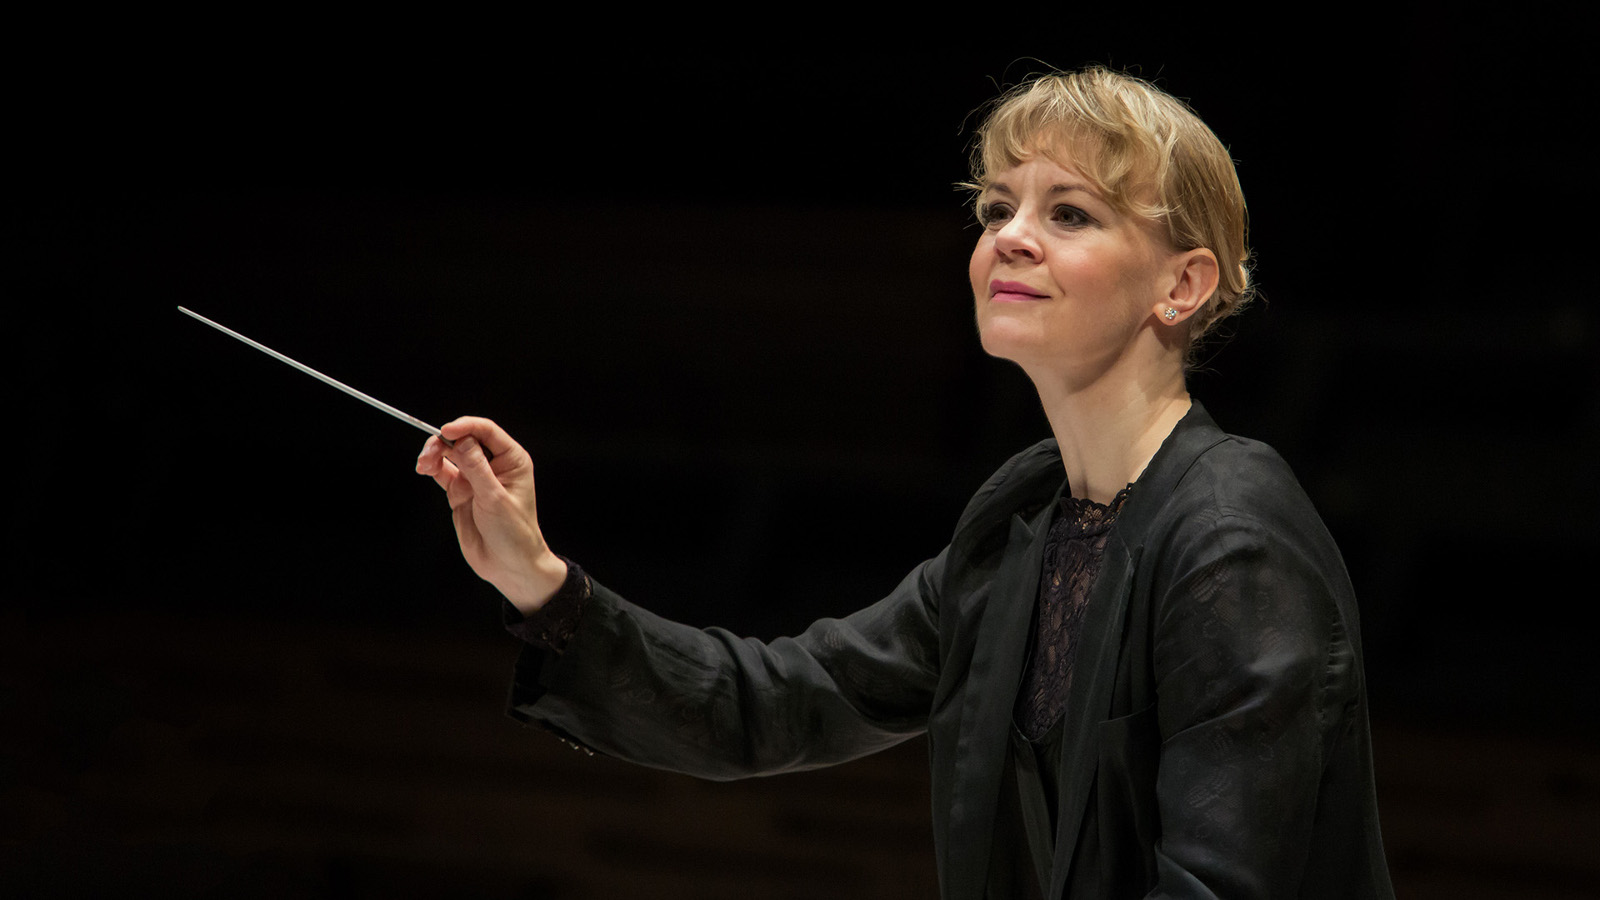 Kuvassa Susanna Mälkki johtamassa orkesteria mustassa puserossa ja kädessään tahtipuikko. Tausta on musta ja kuvassa näkyy vain Susanna Mälkki. 